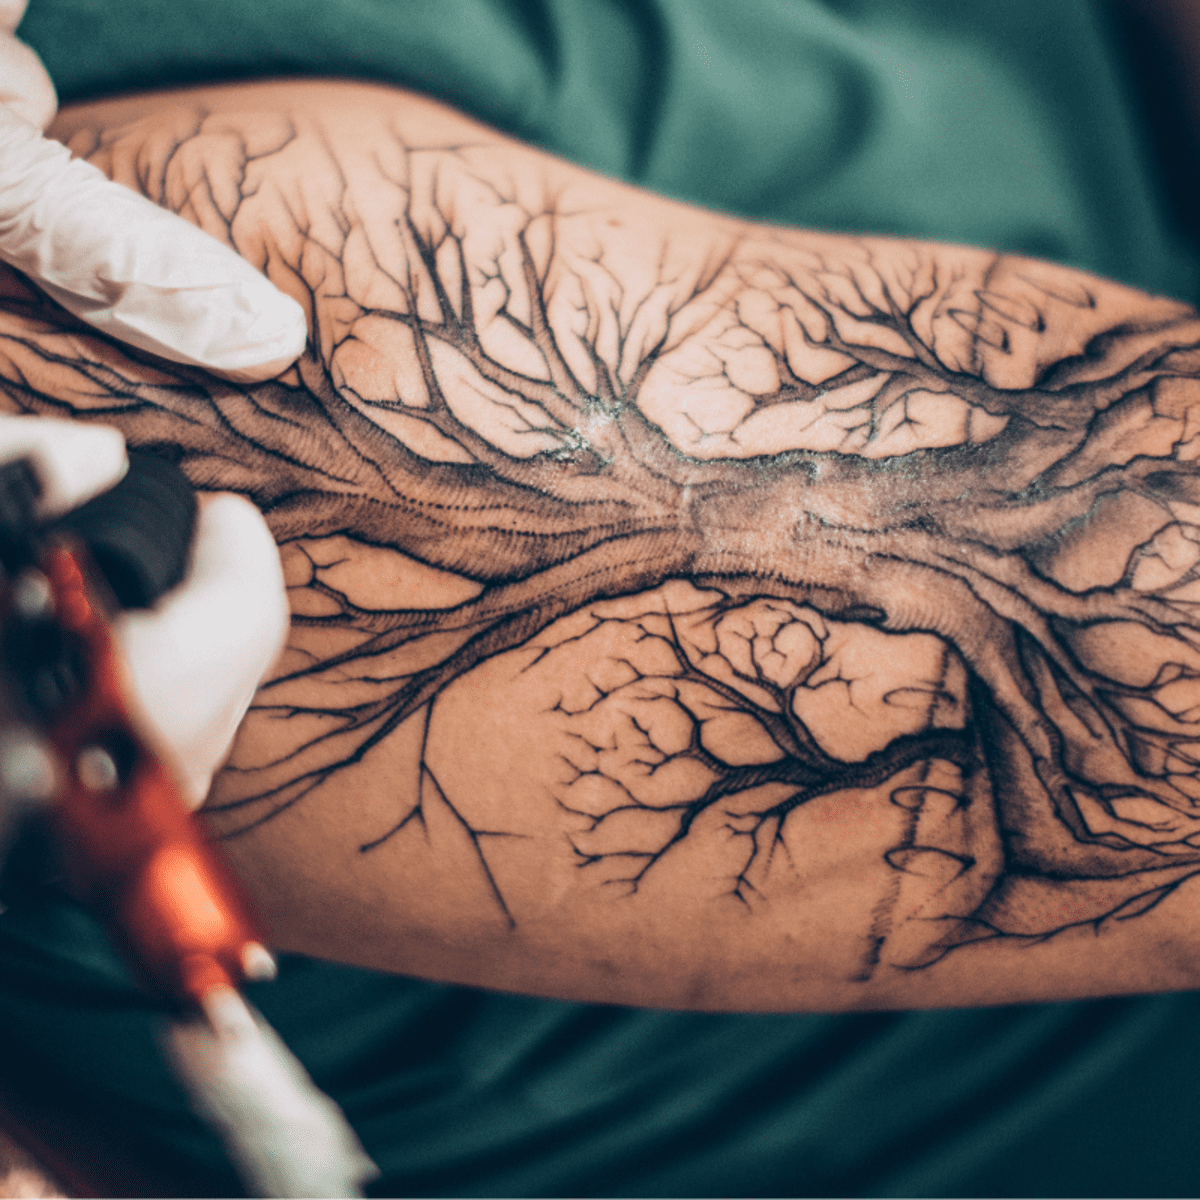 Wise Tree Tattoo - Best Tattoo Ideas Gallery